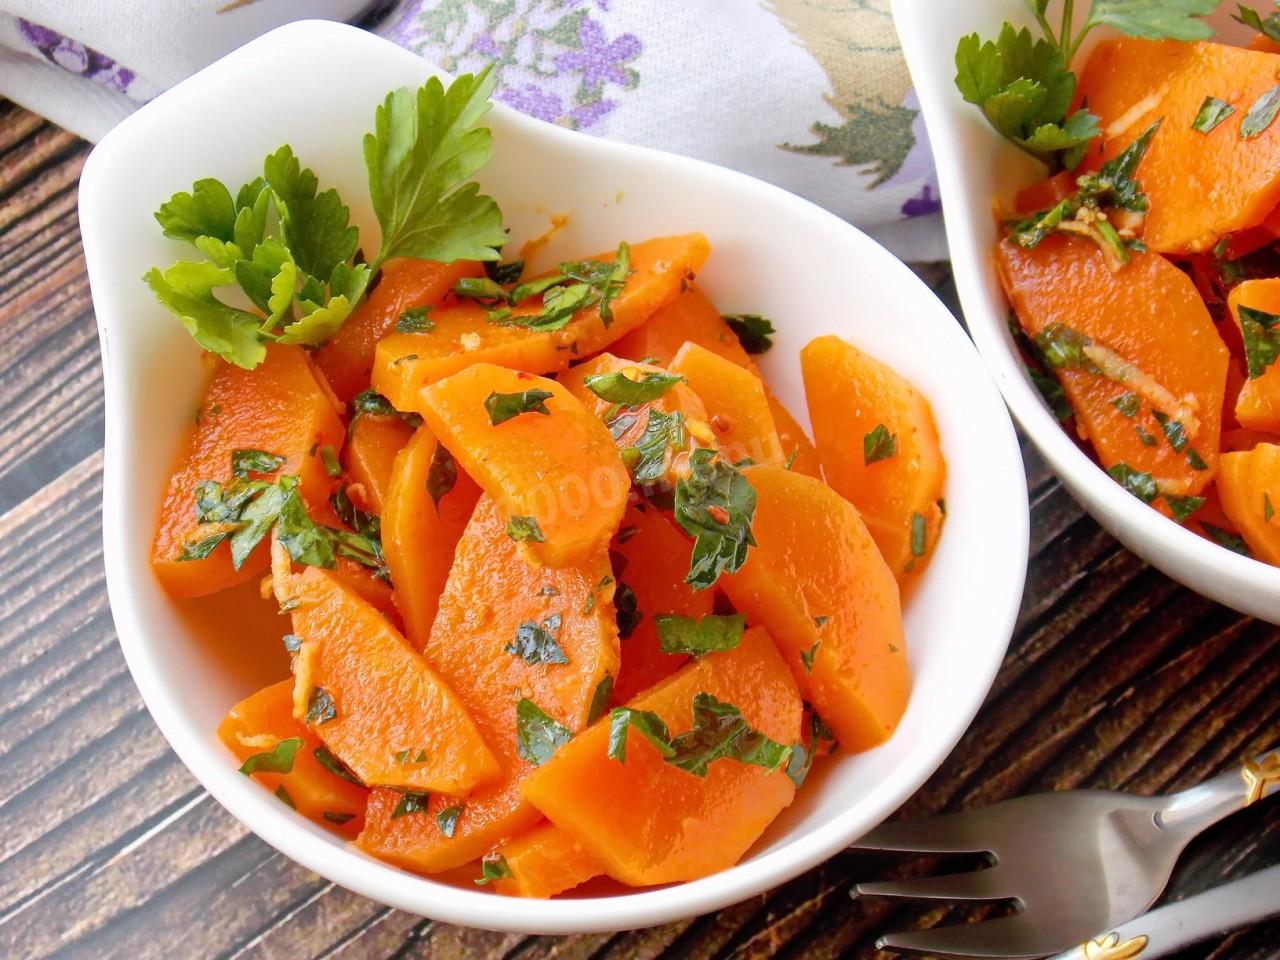 Вареная морковь: калорийность, полезный состав и свойства Как правильно готовить морковь, чтобы сохранить максимум полезных веществ и не причинить вред Рецепты домашних масок Возможный вред продукта